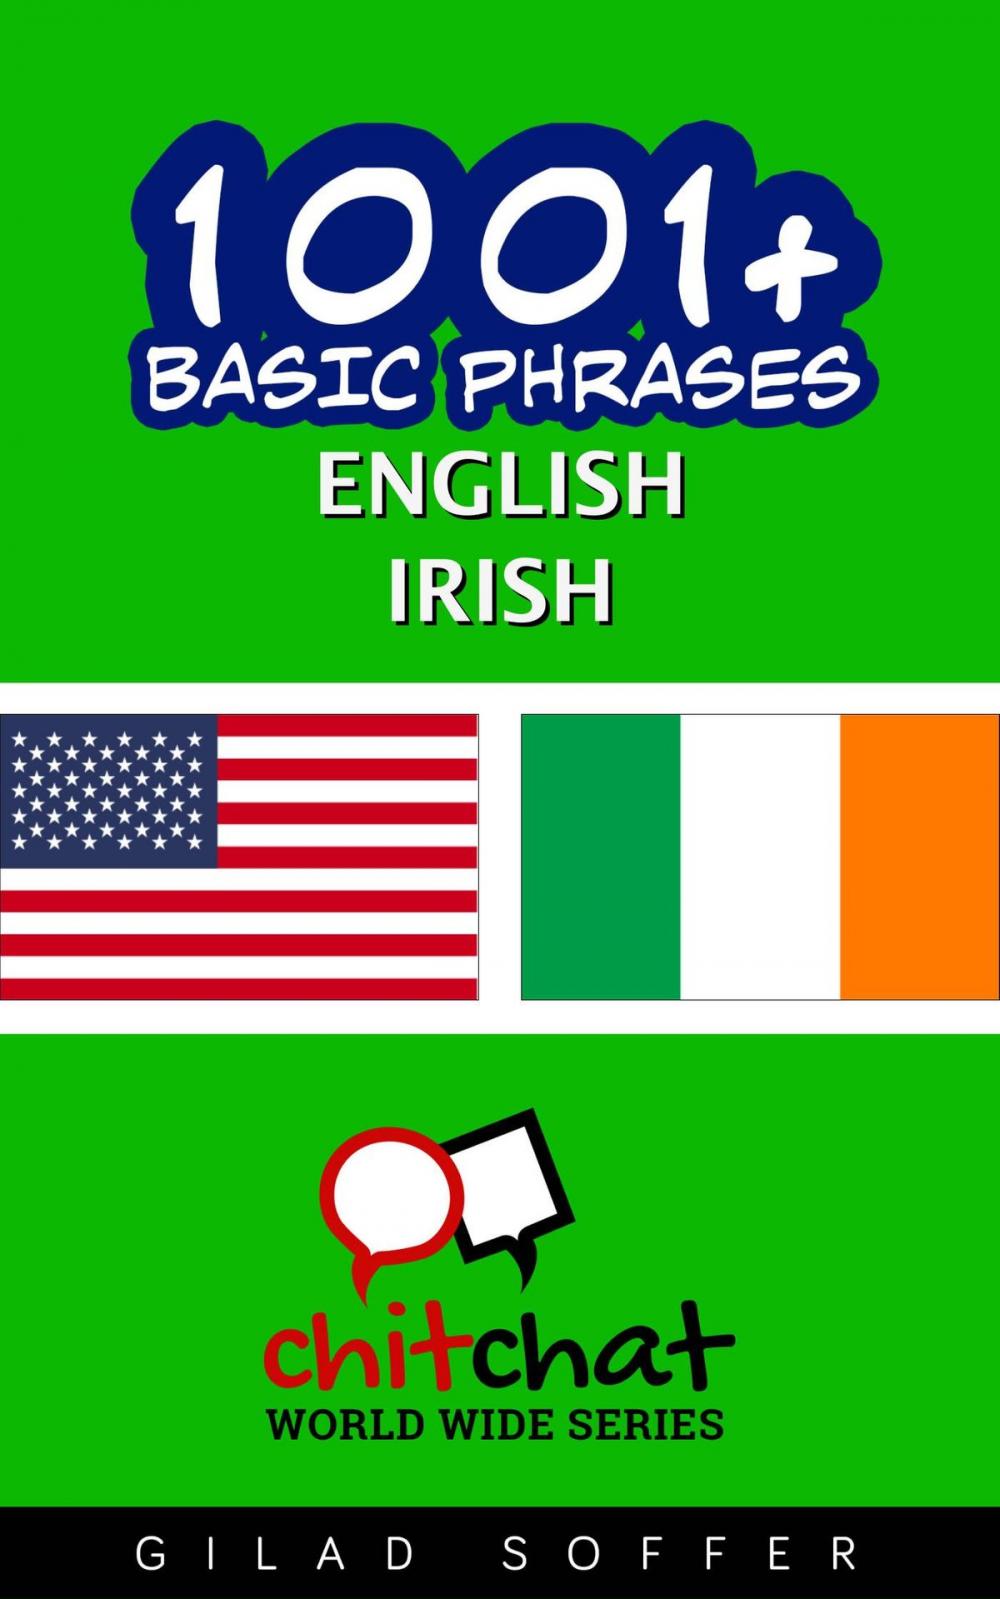 Big bigCover of 1001+ Basic Phrases English - Irish